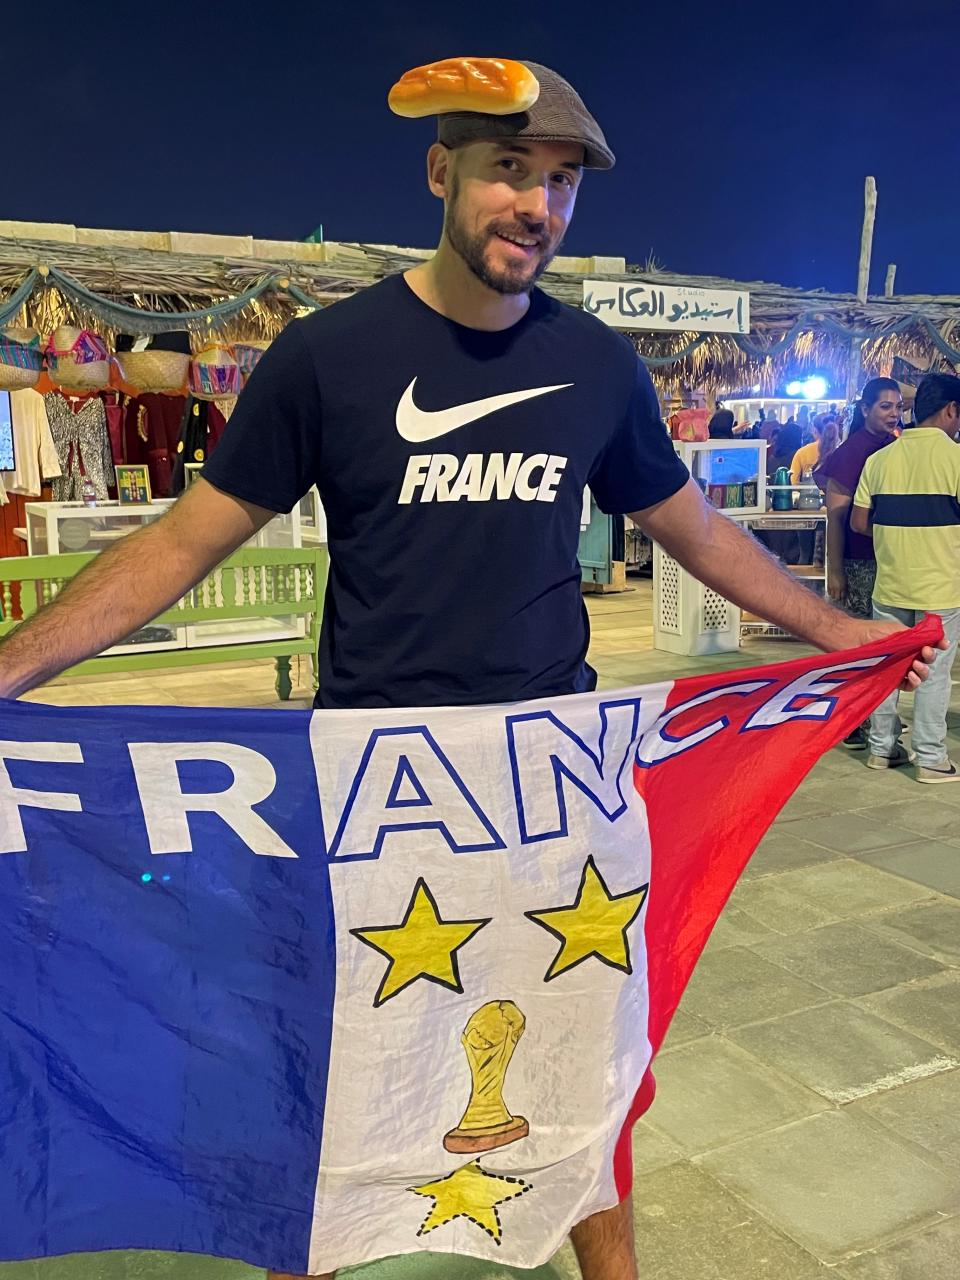 A France fan wearing a baguette hat